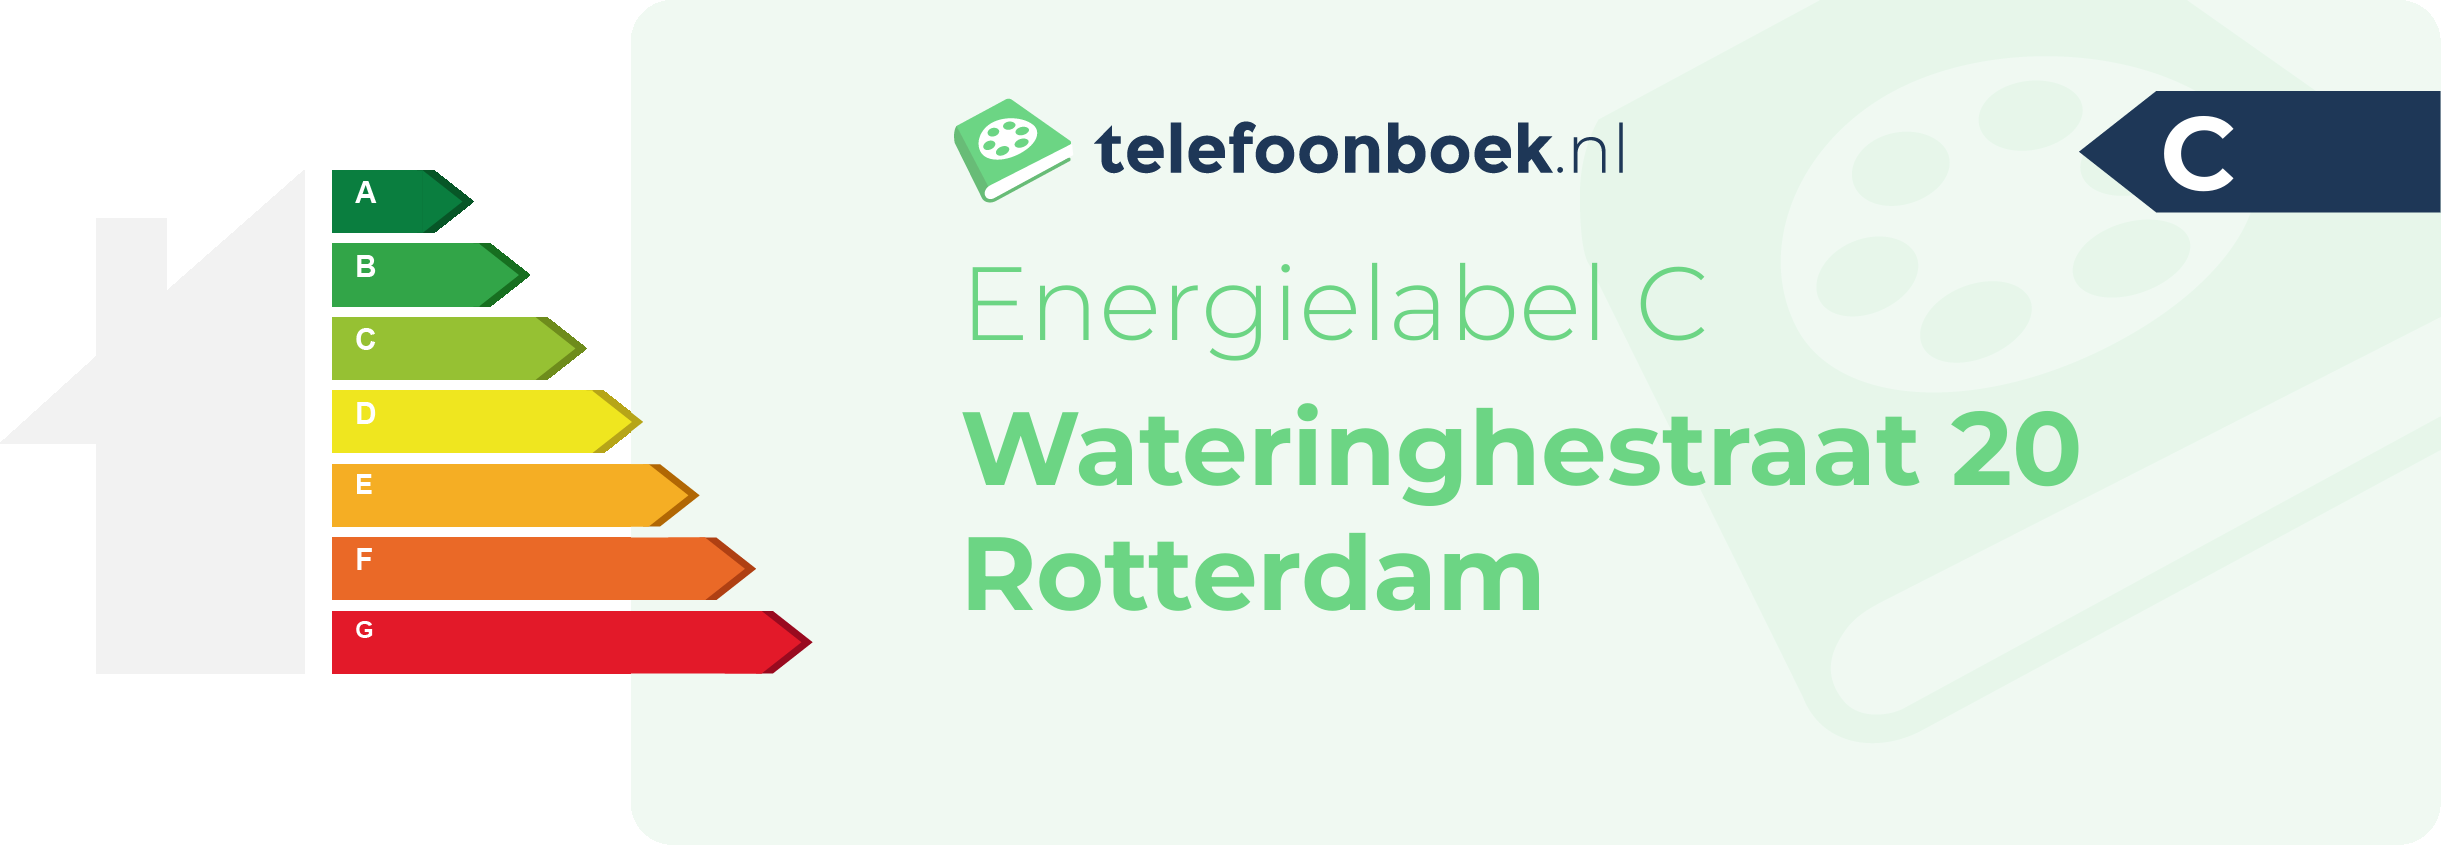 Energielabel Wateringhestraat 20 Rotterdam